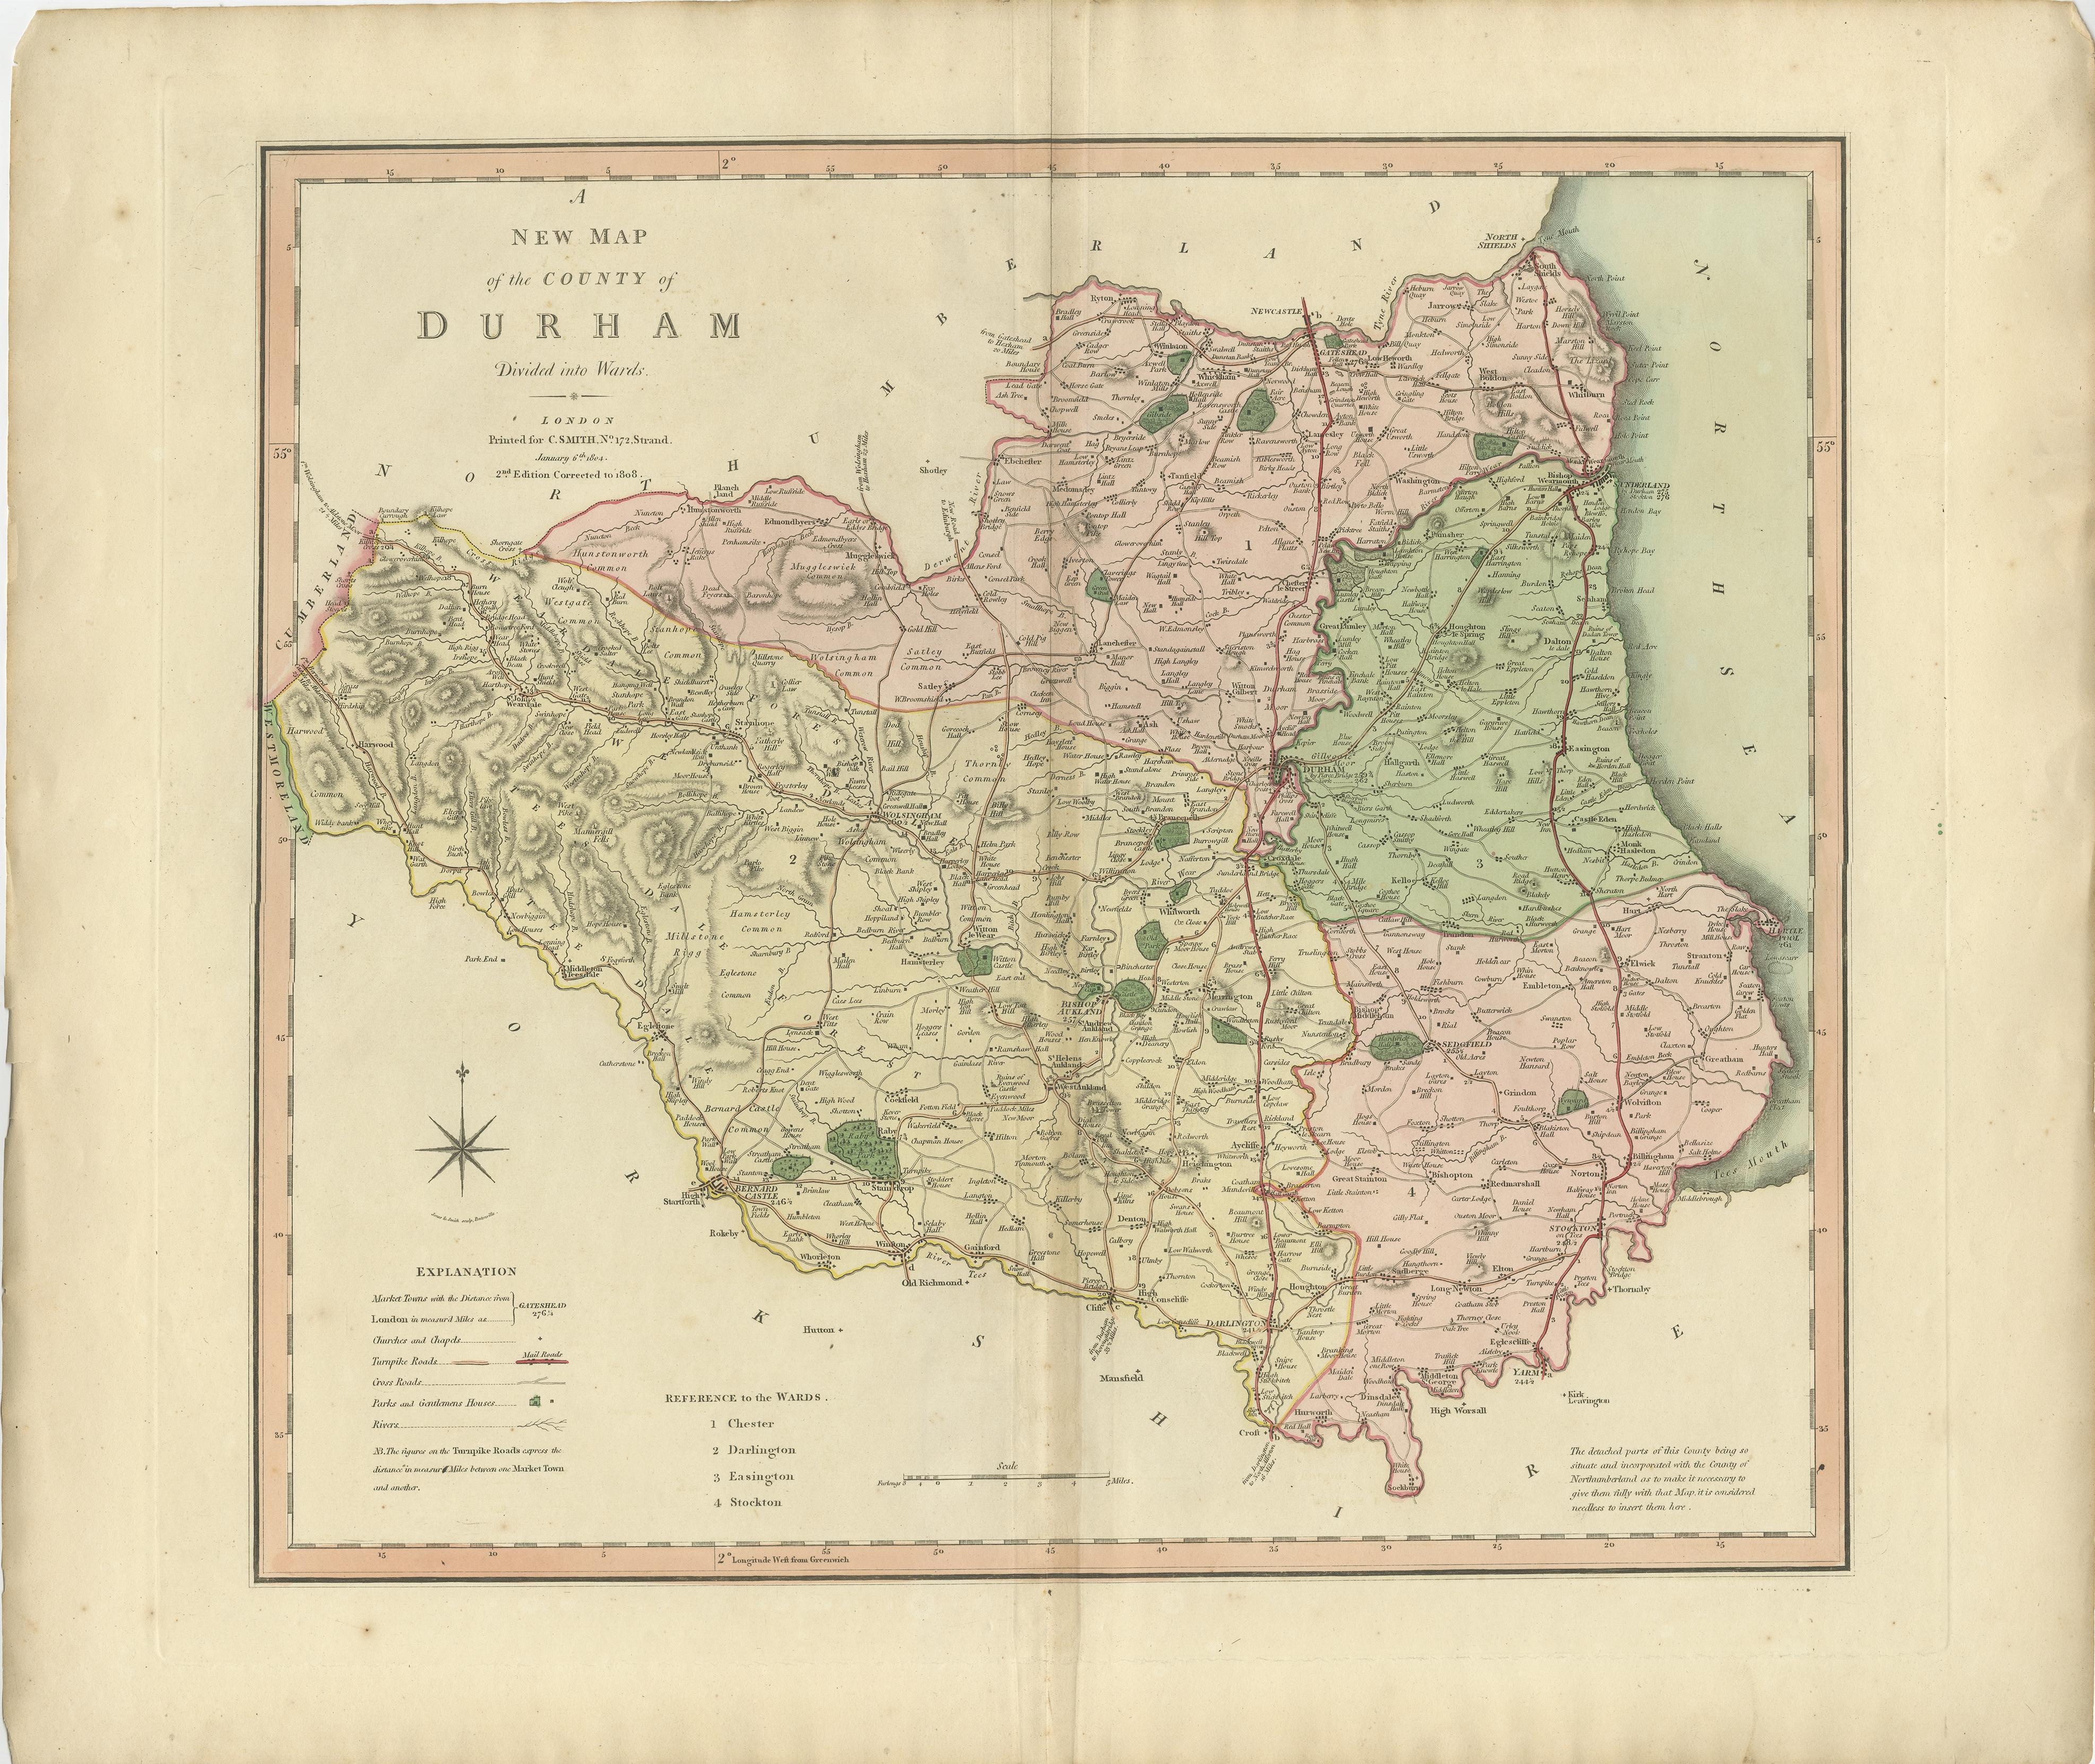 Antike Grafschaftskarte von Durham, erstmals veröffentlicht um 1800. Zu den abgebildeten Dörfern, Städten und Gemeinden gehören Gateshead, South Shields und Darlington.

Charles Smith war ein um 1800 in London tätiger Kartograph. Seine Karten